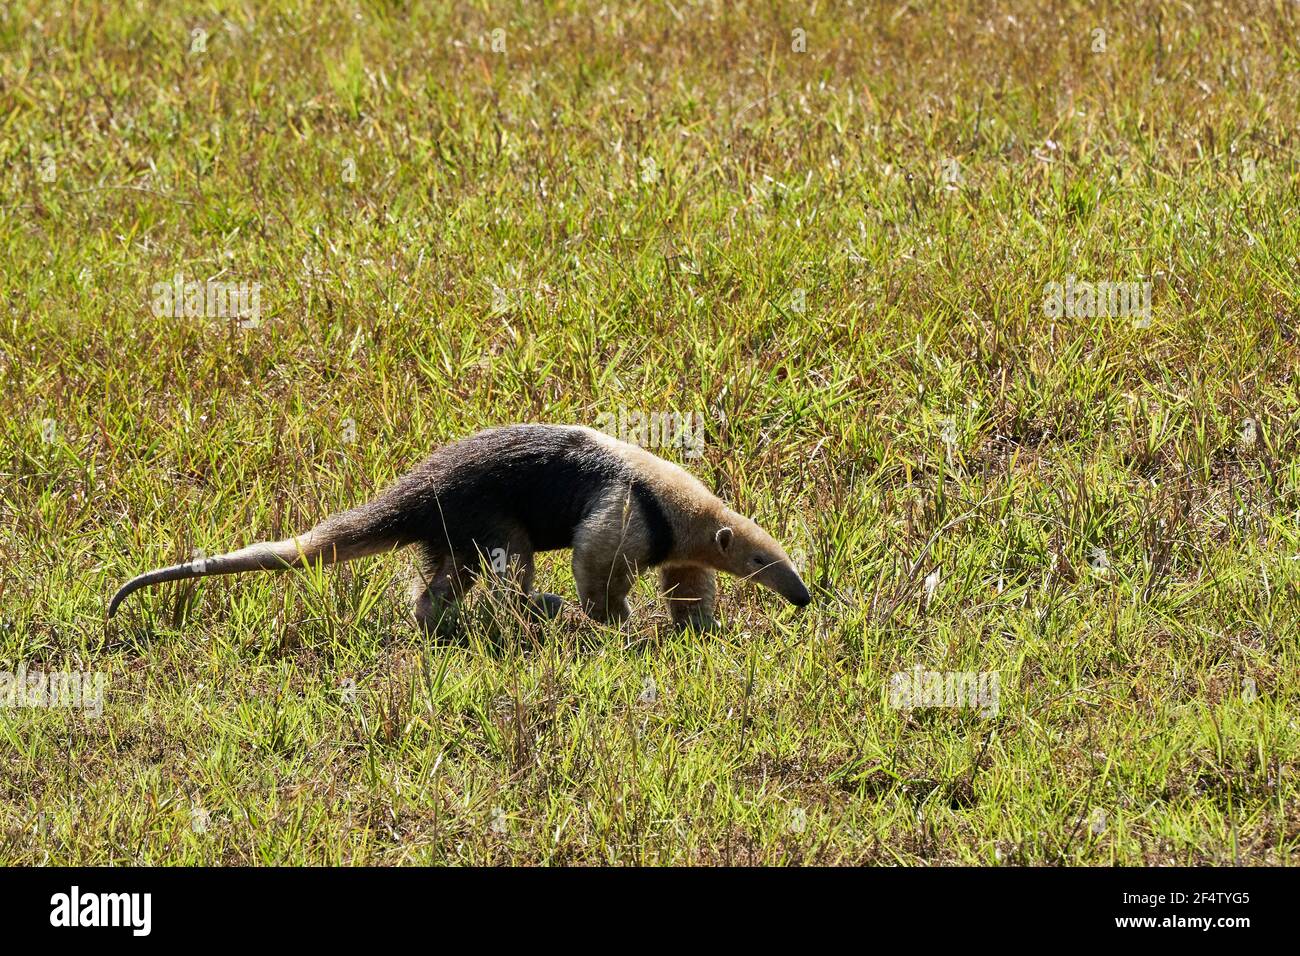 tamandua meridional, Tamandua tetradactyla, también anteruador o anteruador menor, es una especie de anteruador de América del Sur, forrajeando en un prado Foto de stock